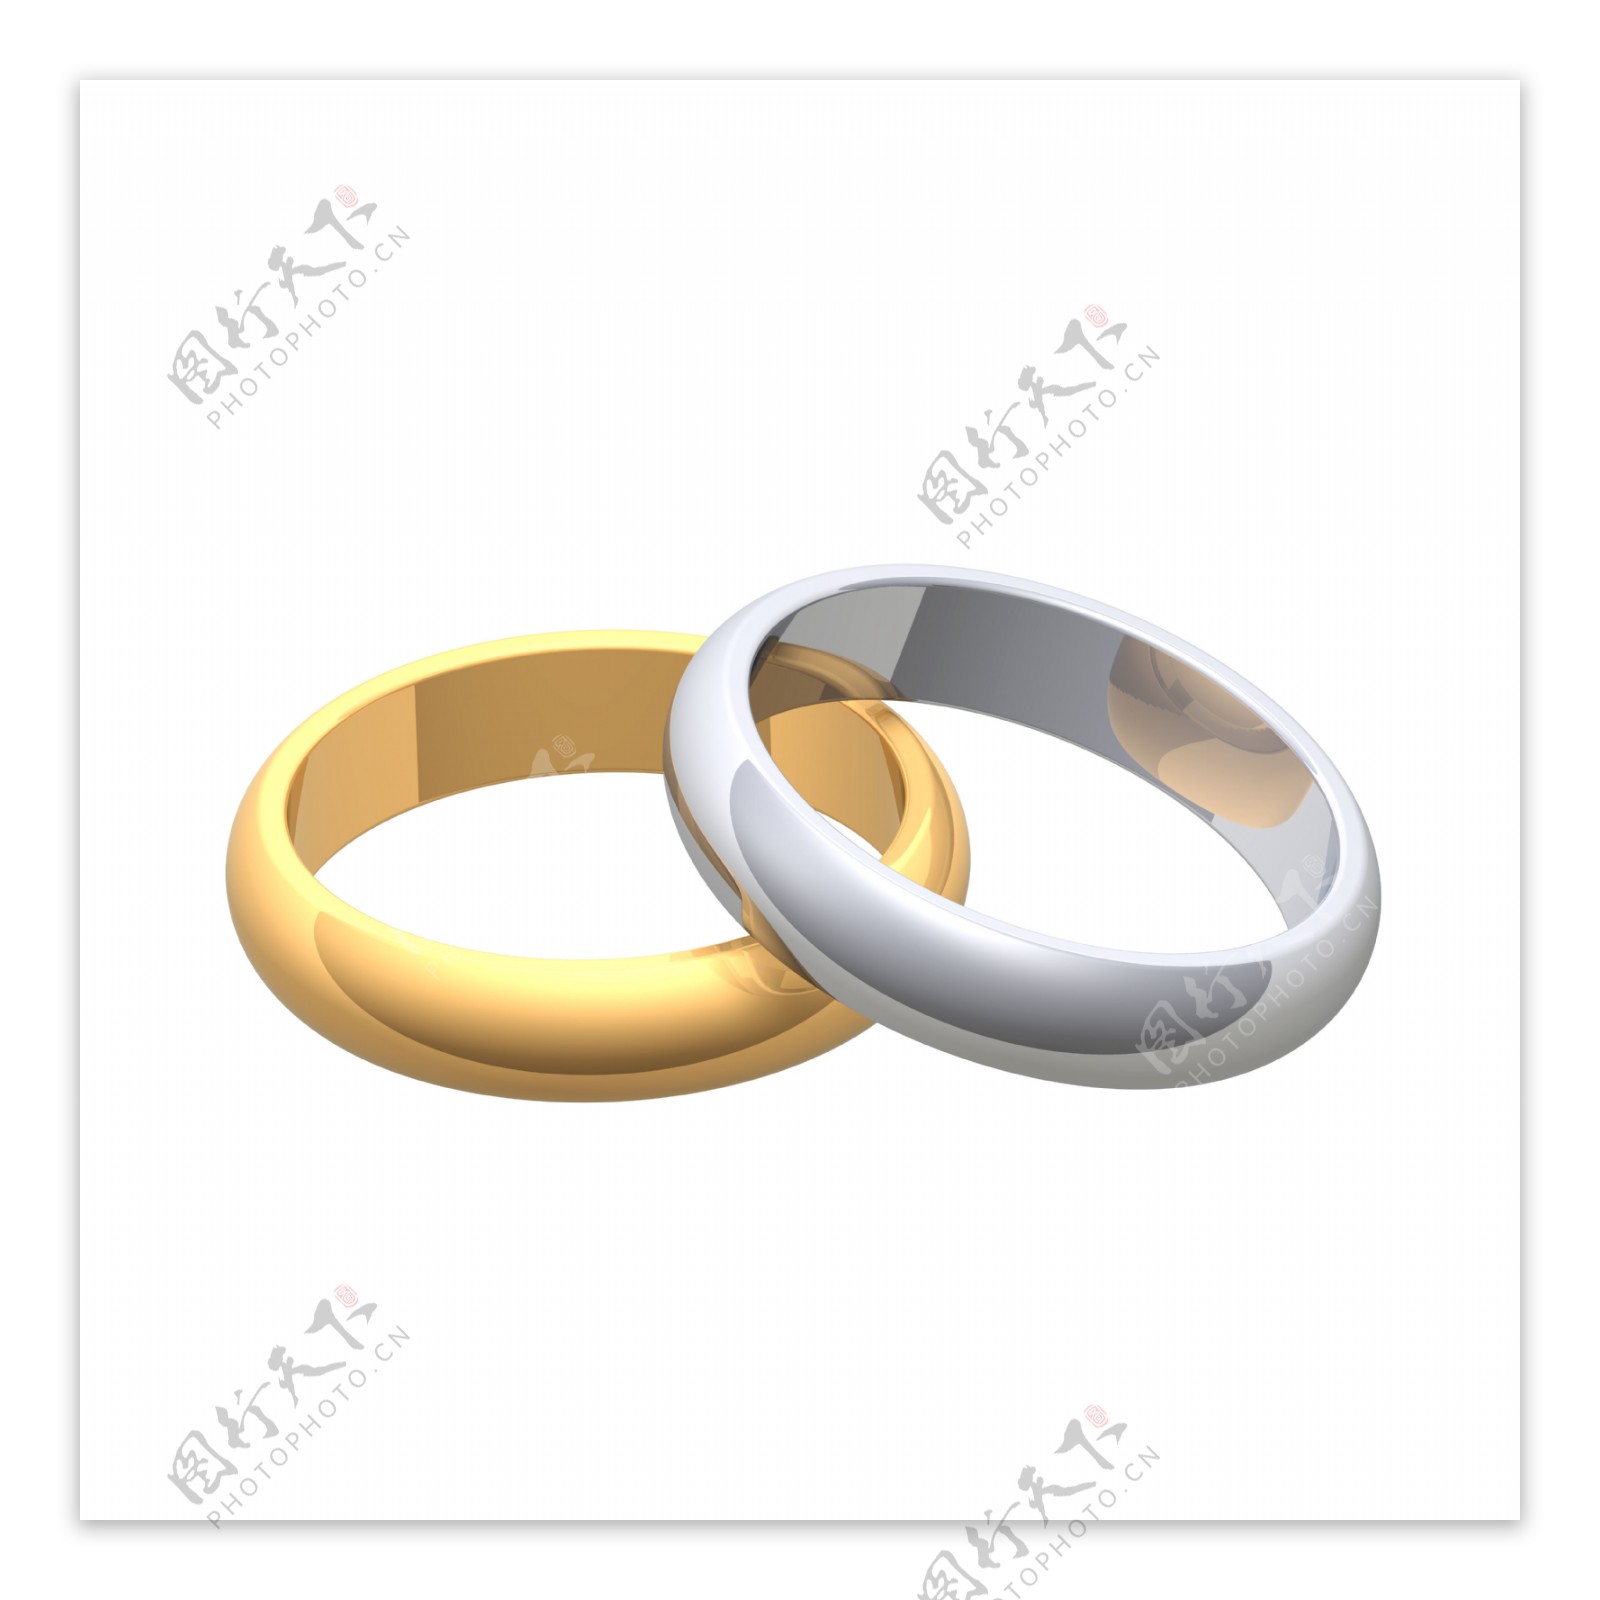 黄金结婚戒指和银白色隔离